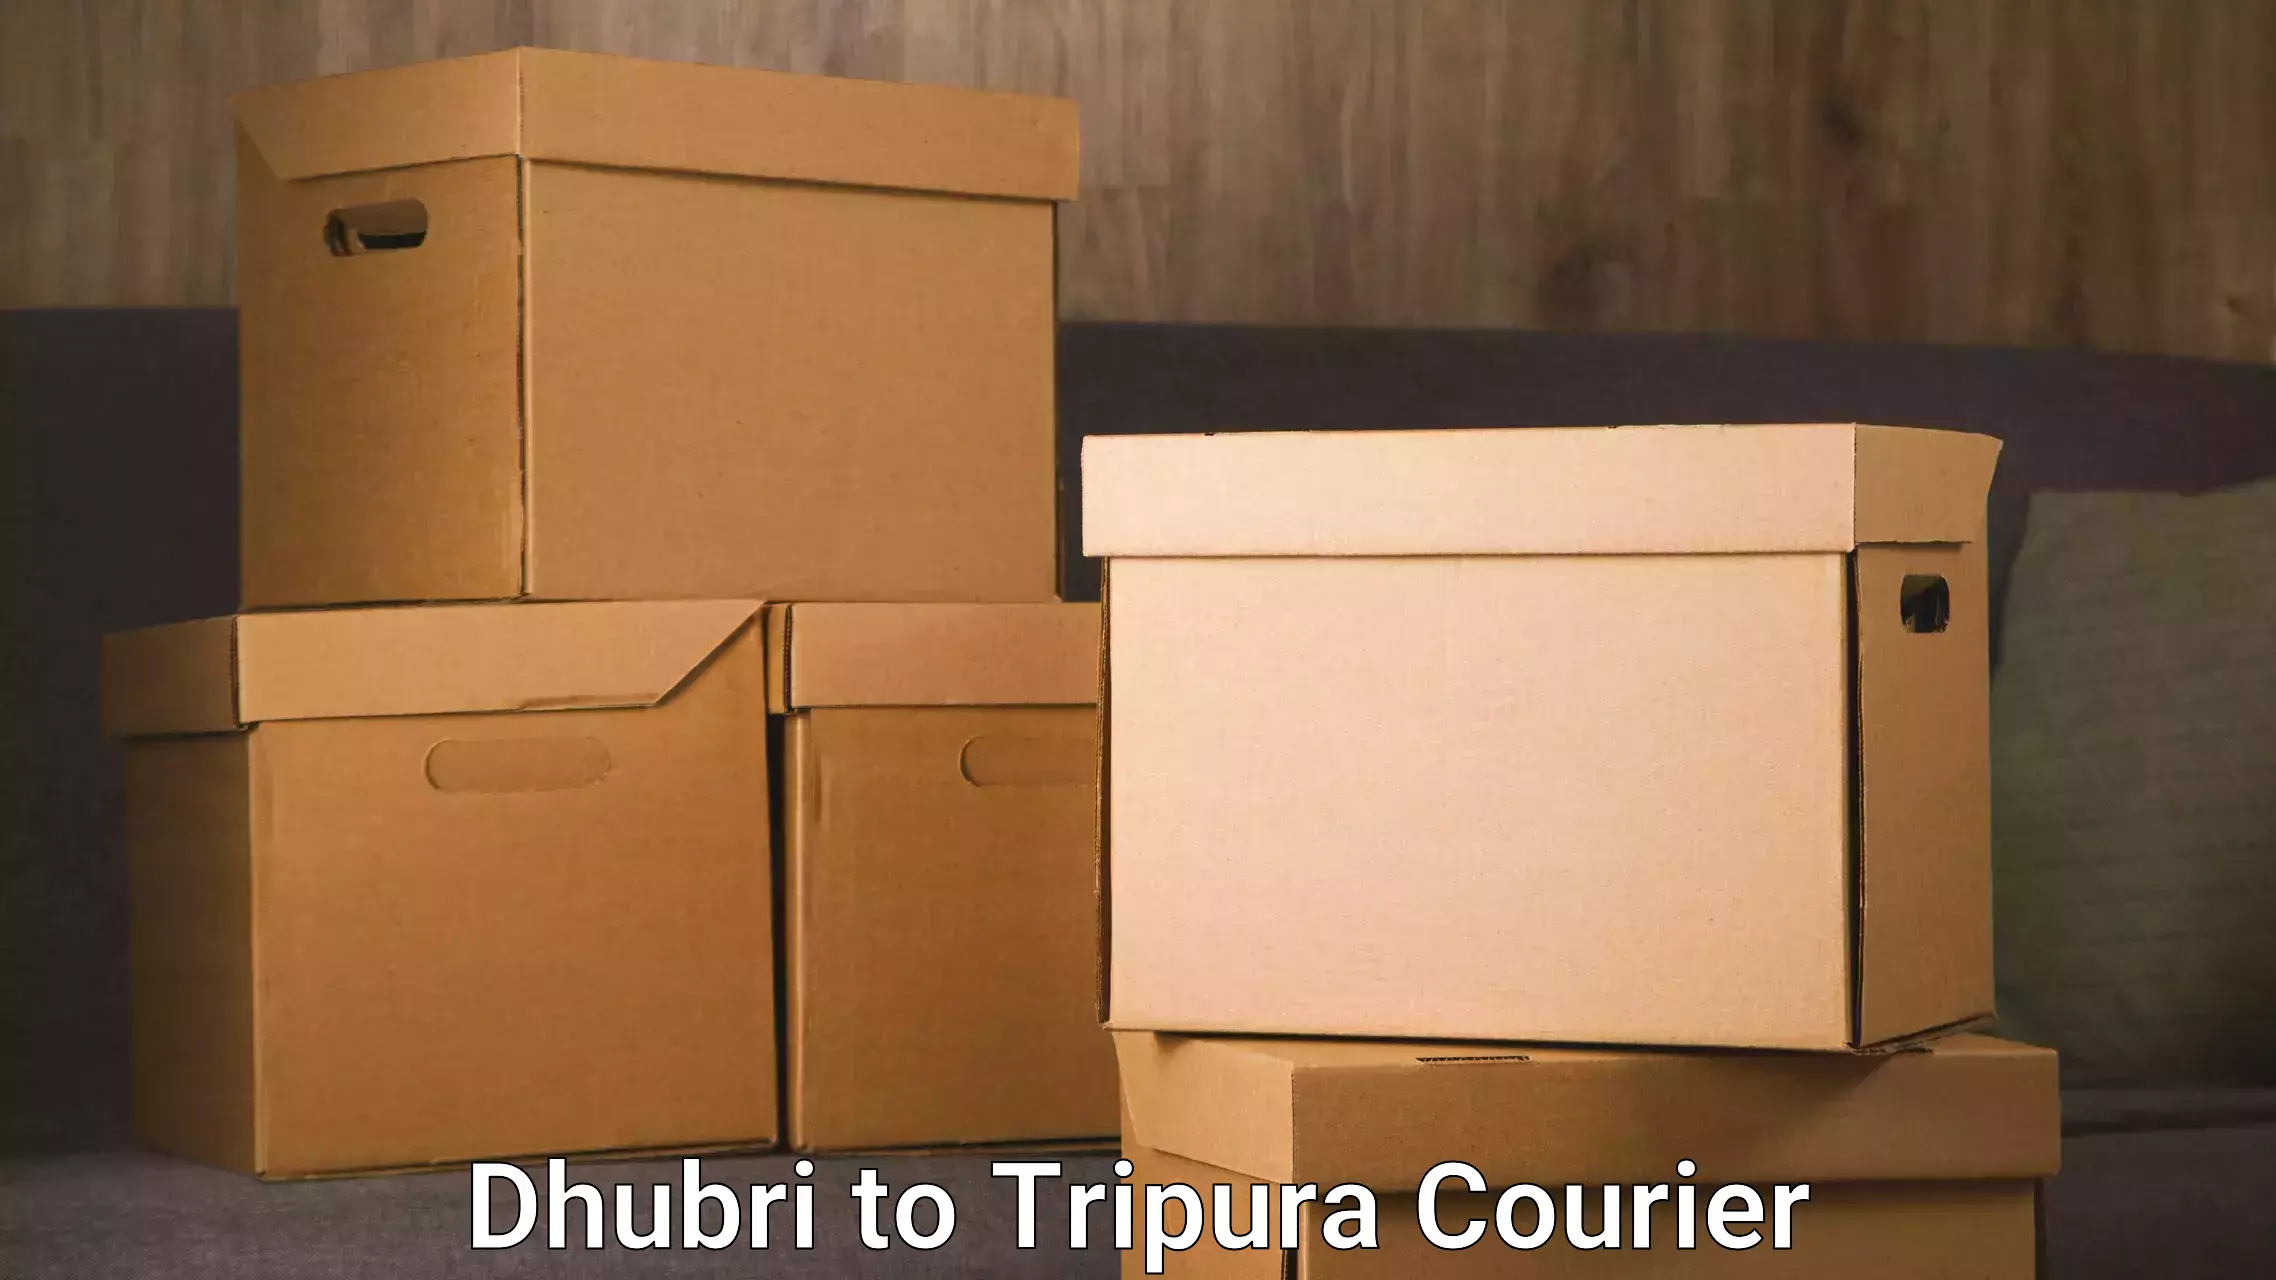 Courier service comparison in Dhubri to Agartala